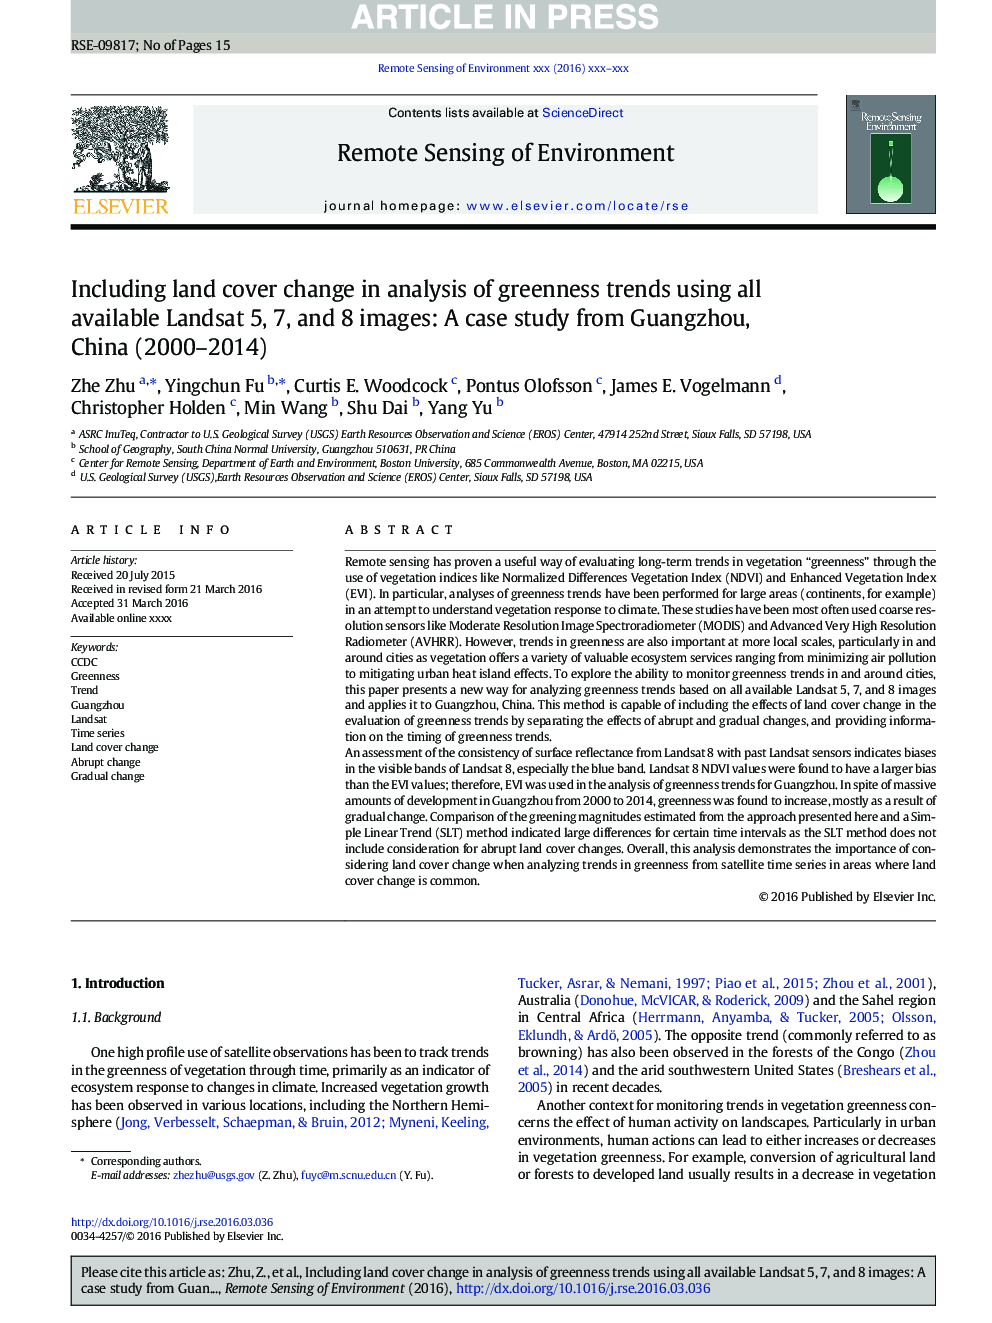 از جمله تغییرات پوشش زمین در تجزیه و تحلیل روند سبز با استفاده از تمام تصاویر لندست 5، 7 و 8 در دسترس است: یک مطالعه مورد از گوانگژو، چین (2000-2014) 